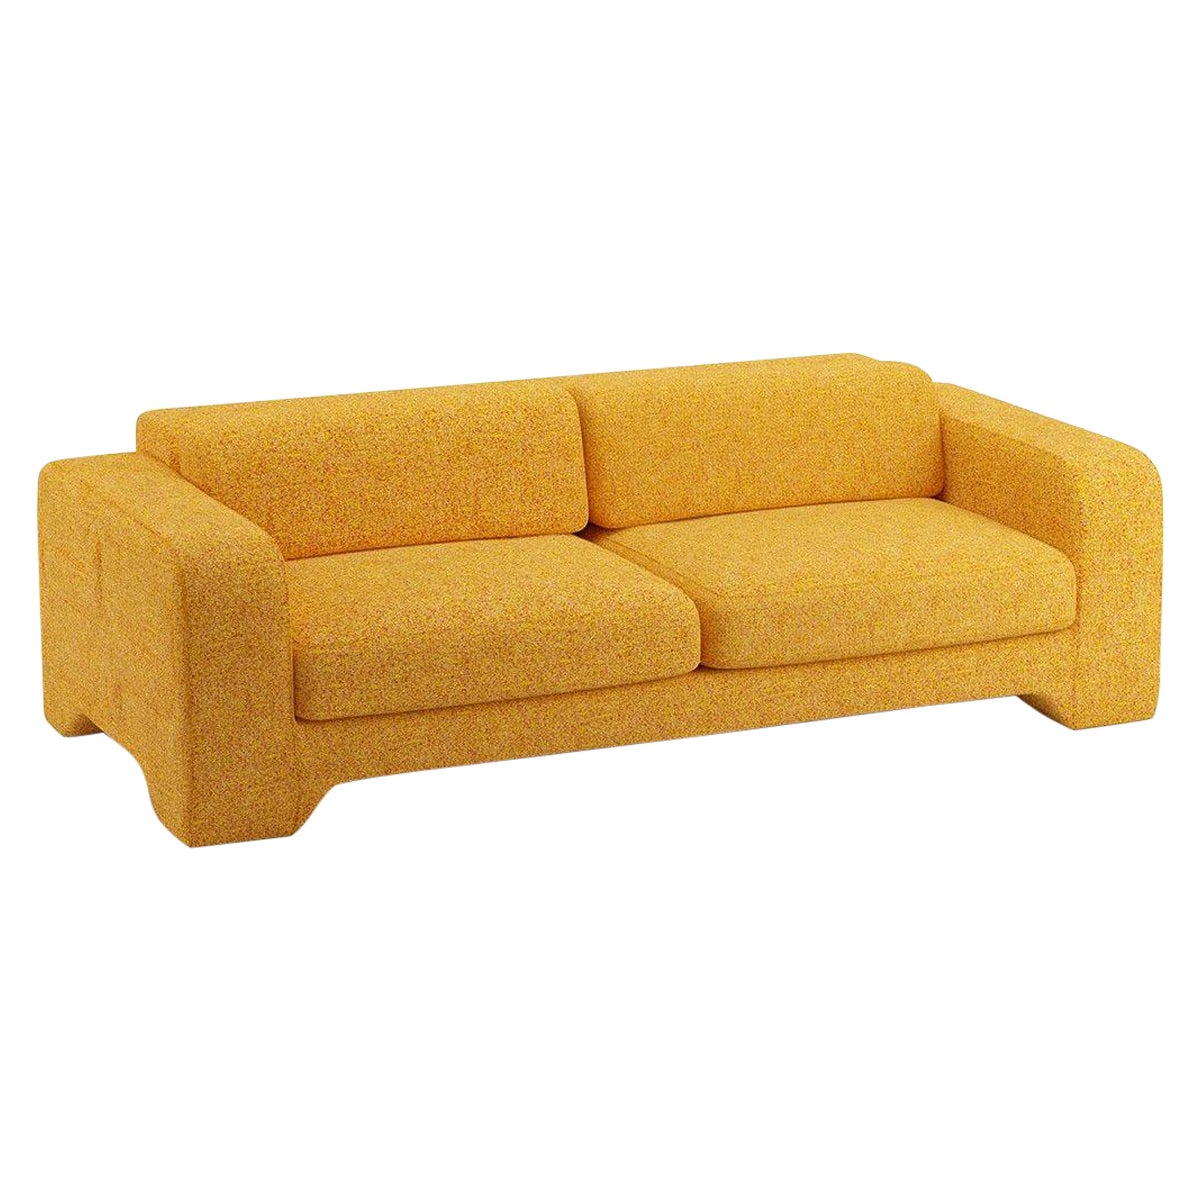 Popus Editions Giovanna 3 Seater Sofa in Saffron Zanzi Linen Fabric